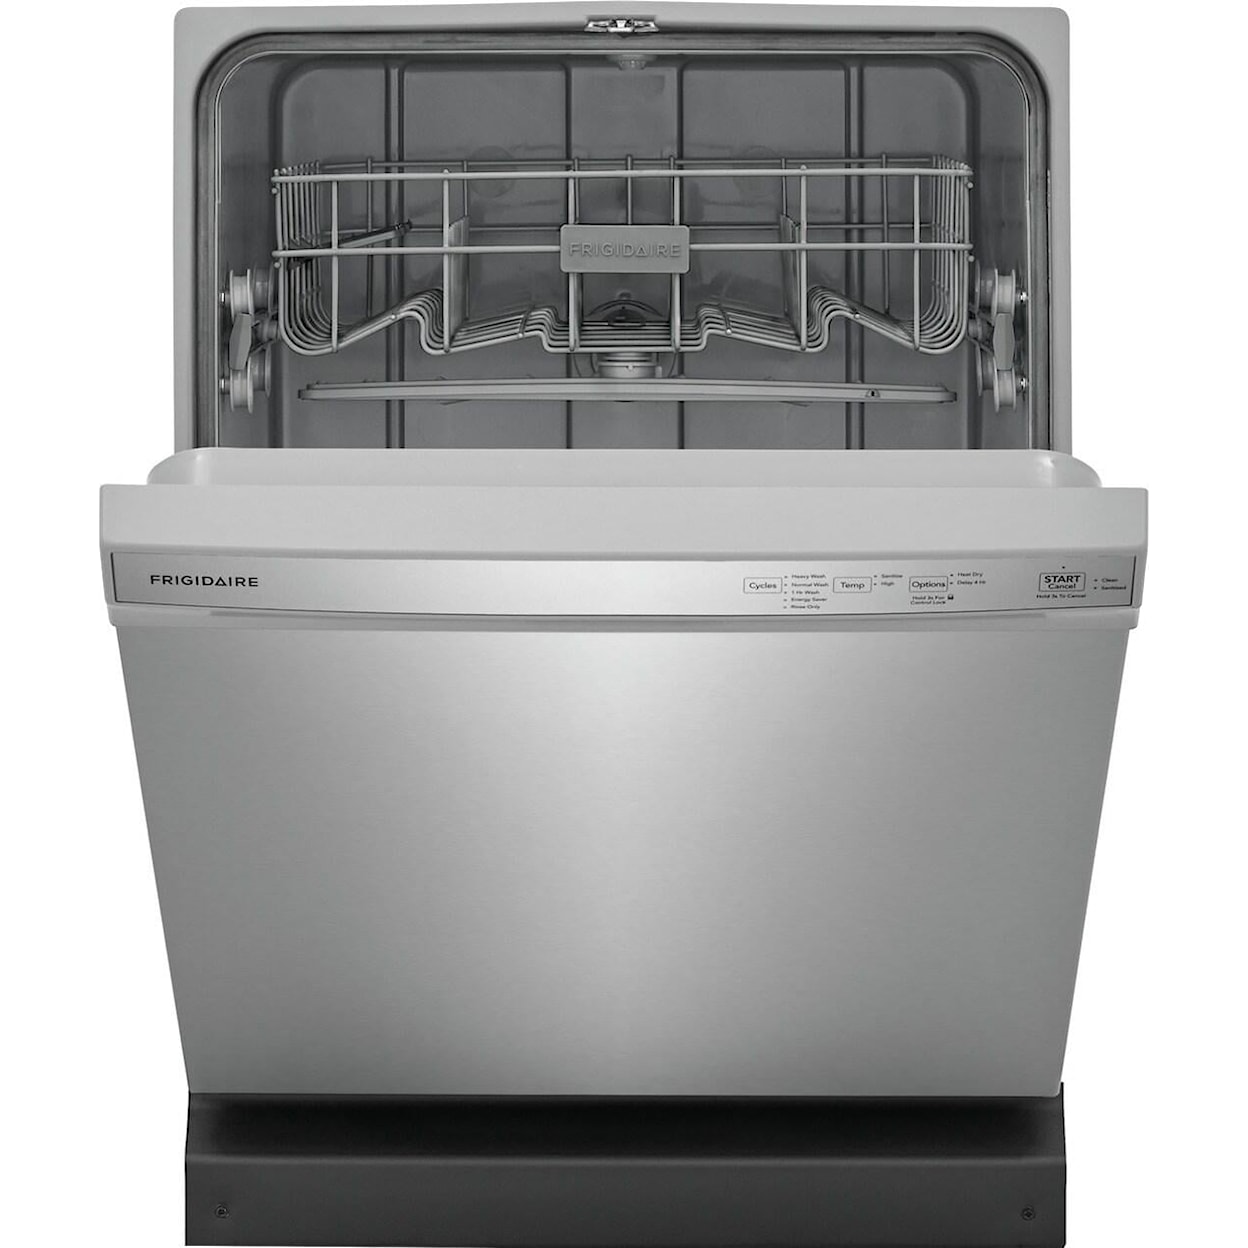 Frigidaire Dishwashers Built In Dishwasher